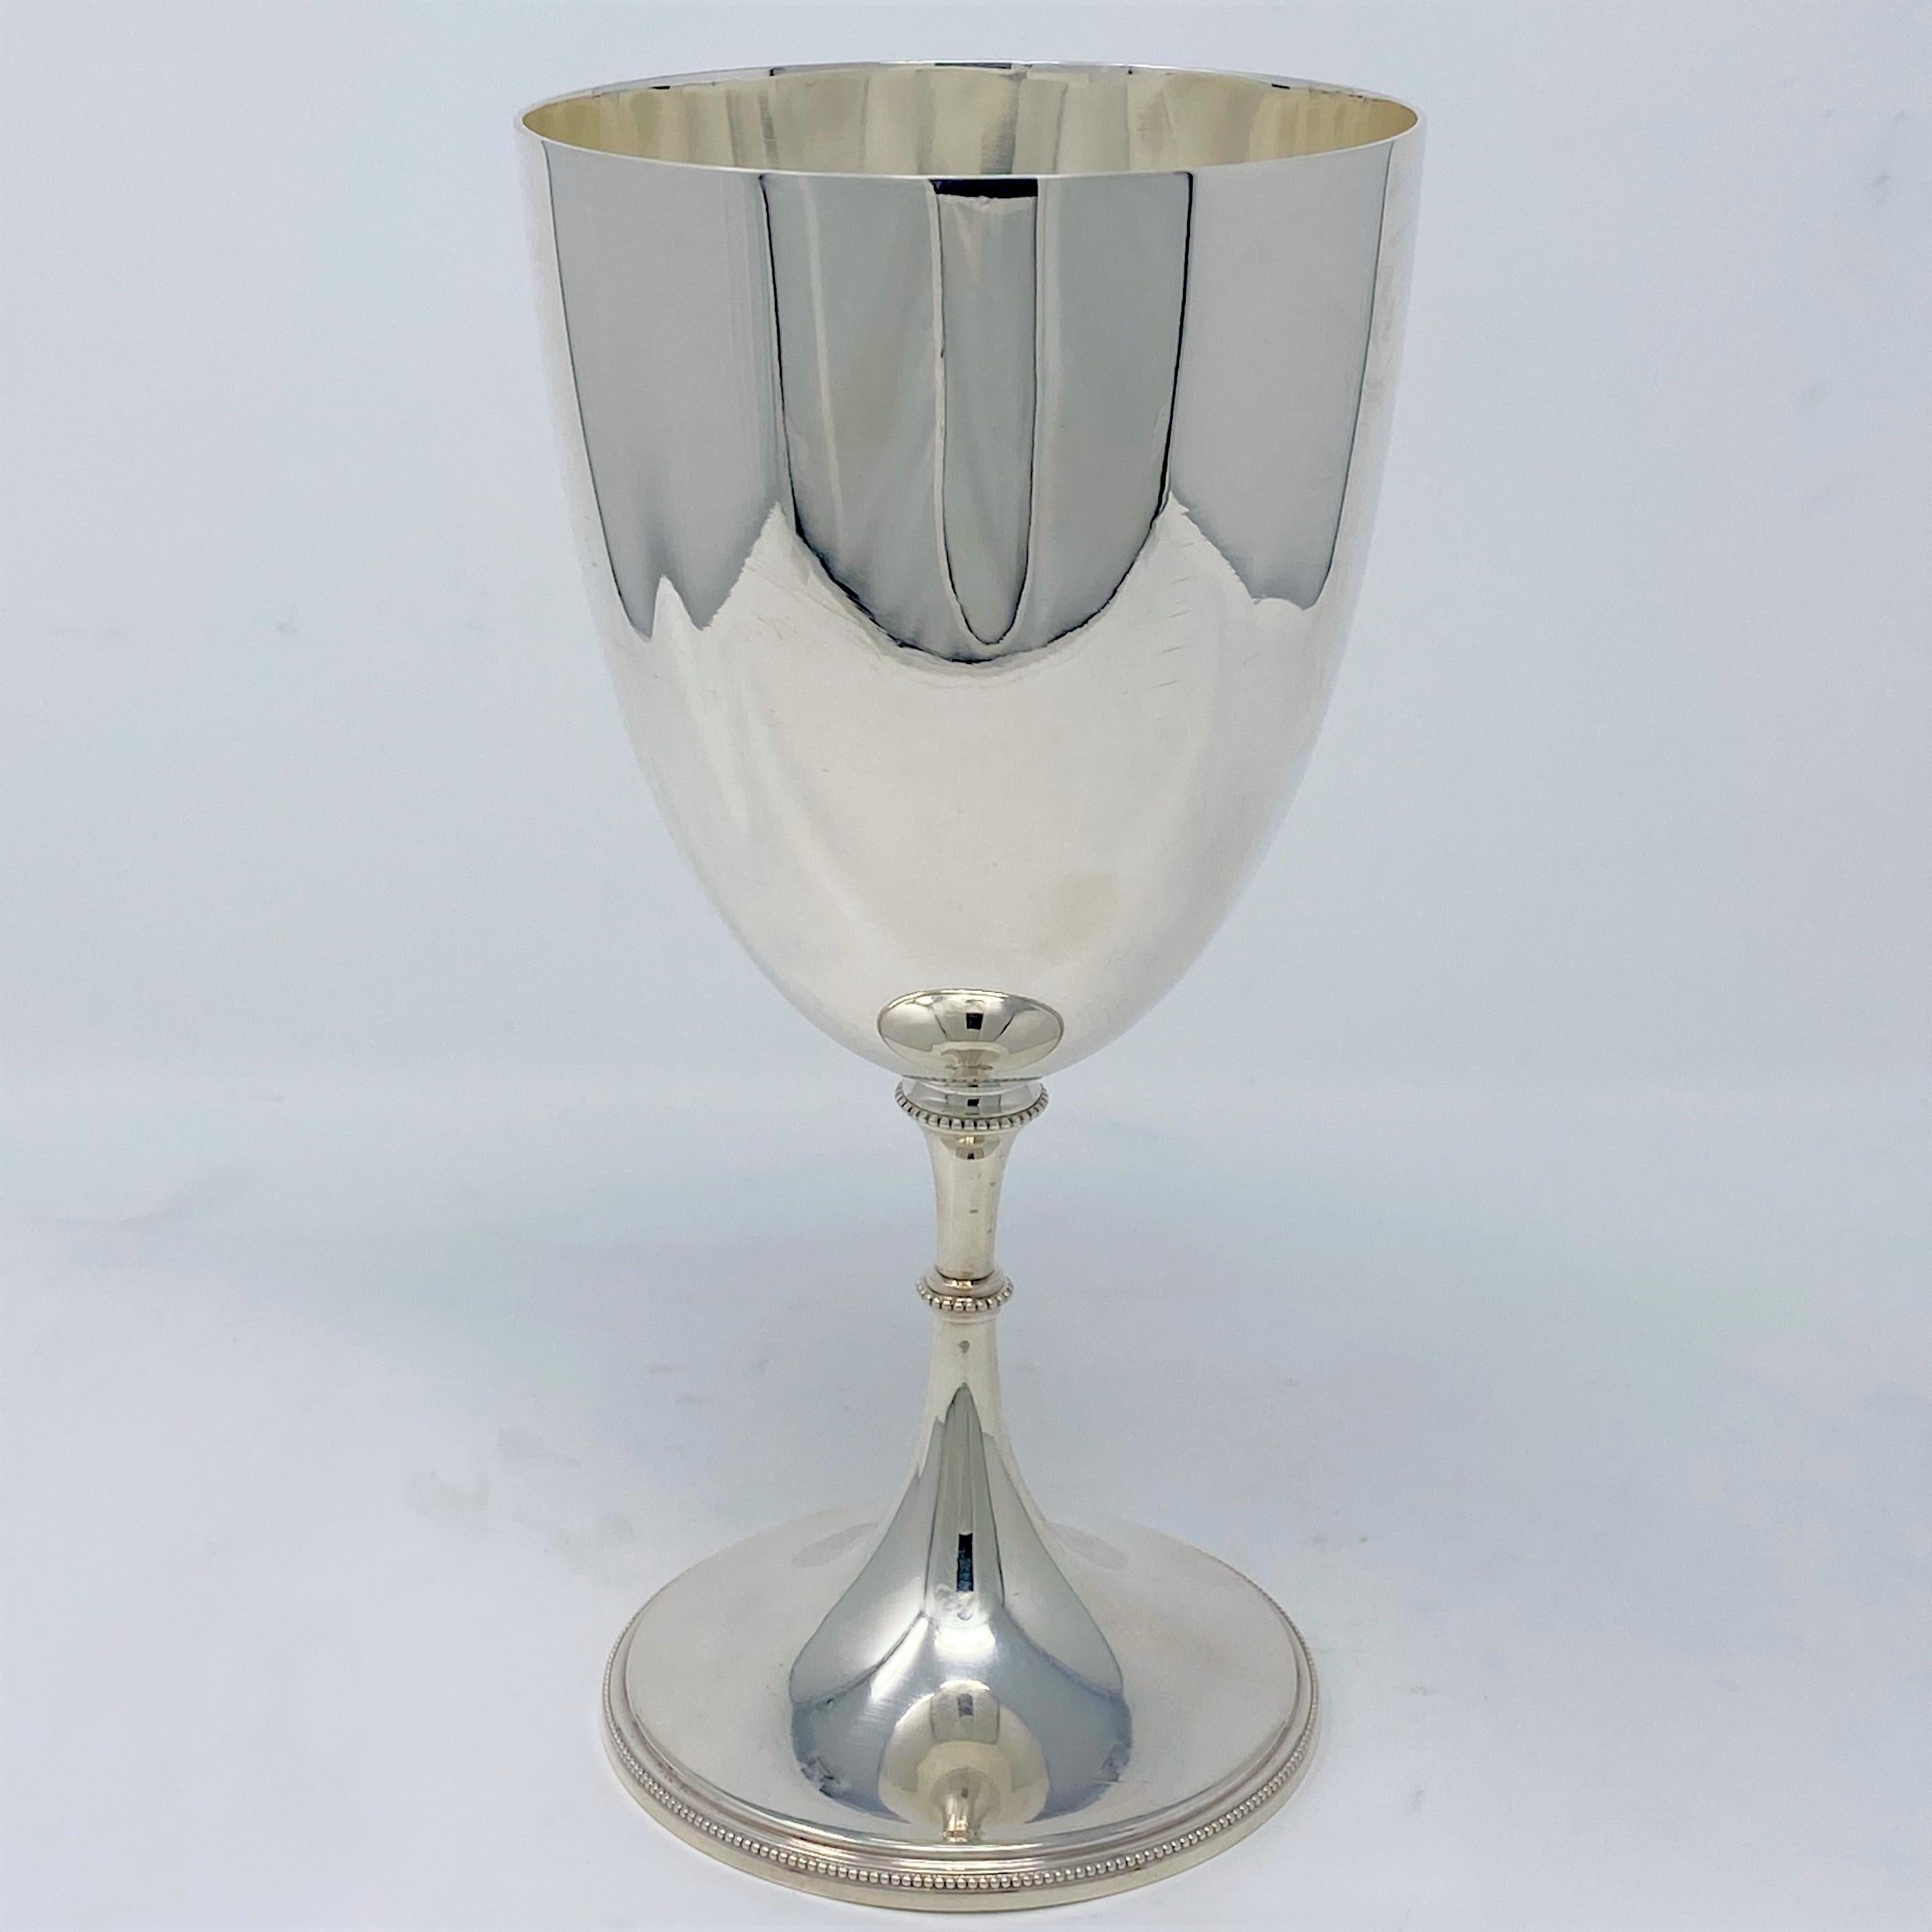 Antique English Sheffield silver goblet, circa 1890.
GOB004